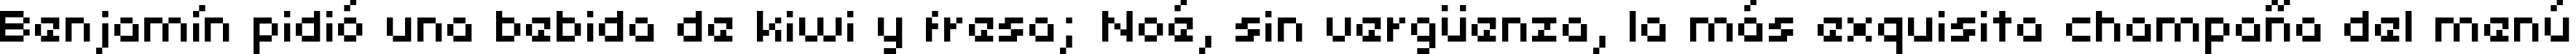 Пример написания шрифтом uni 05_53 текста на испанском